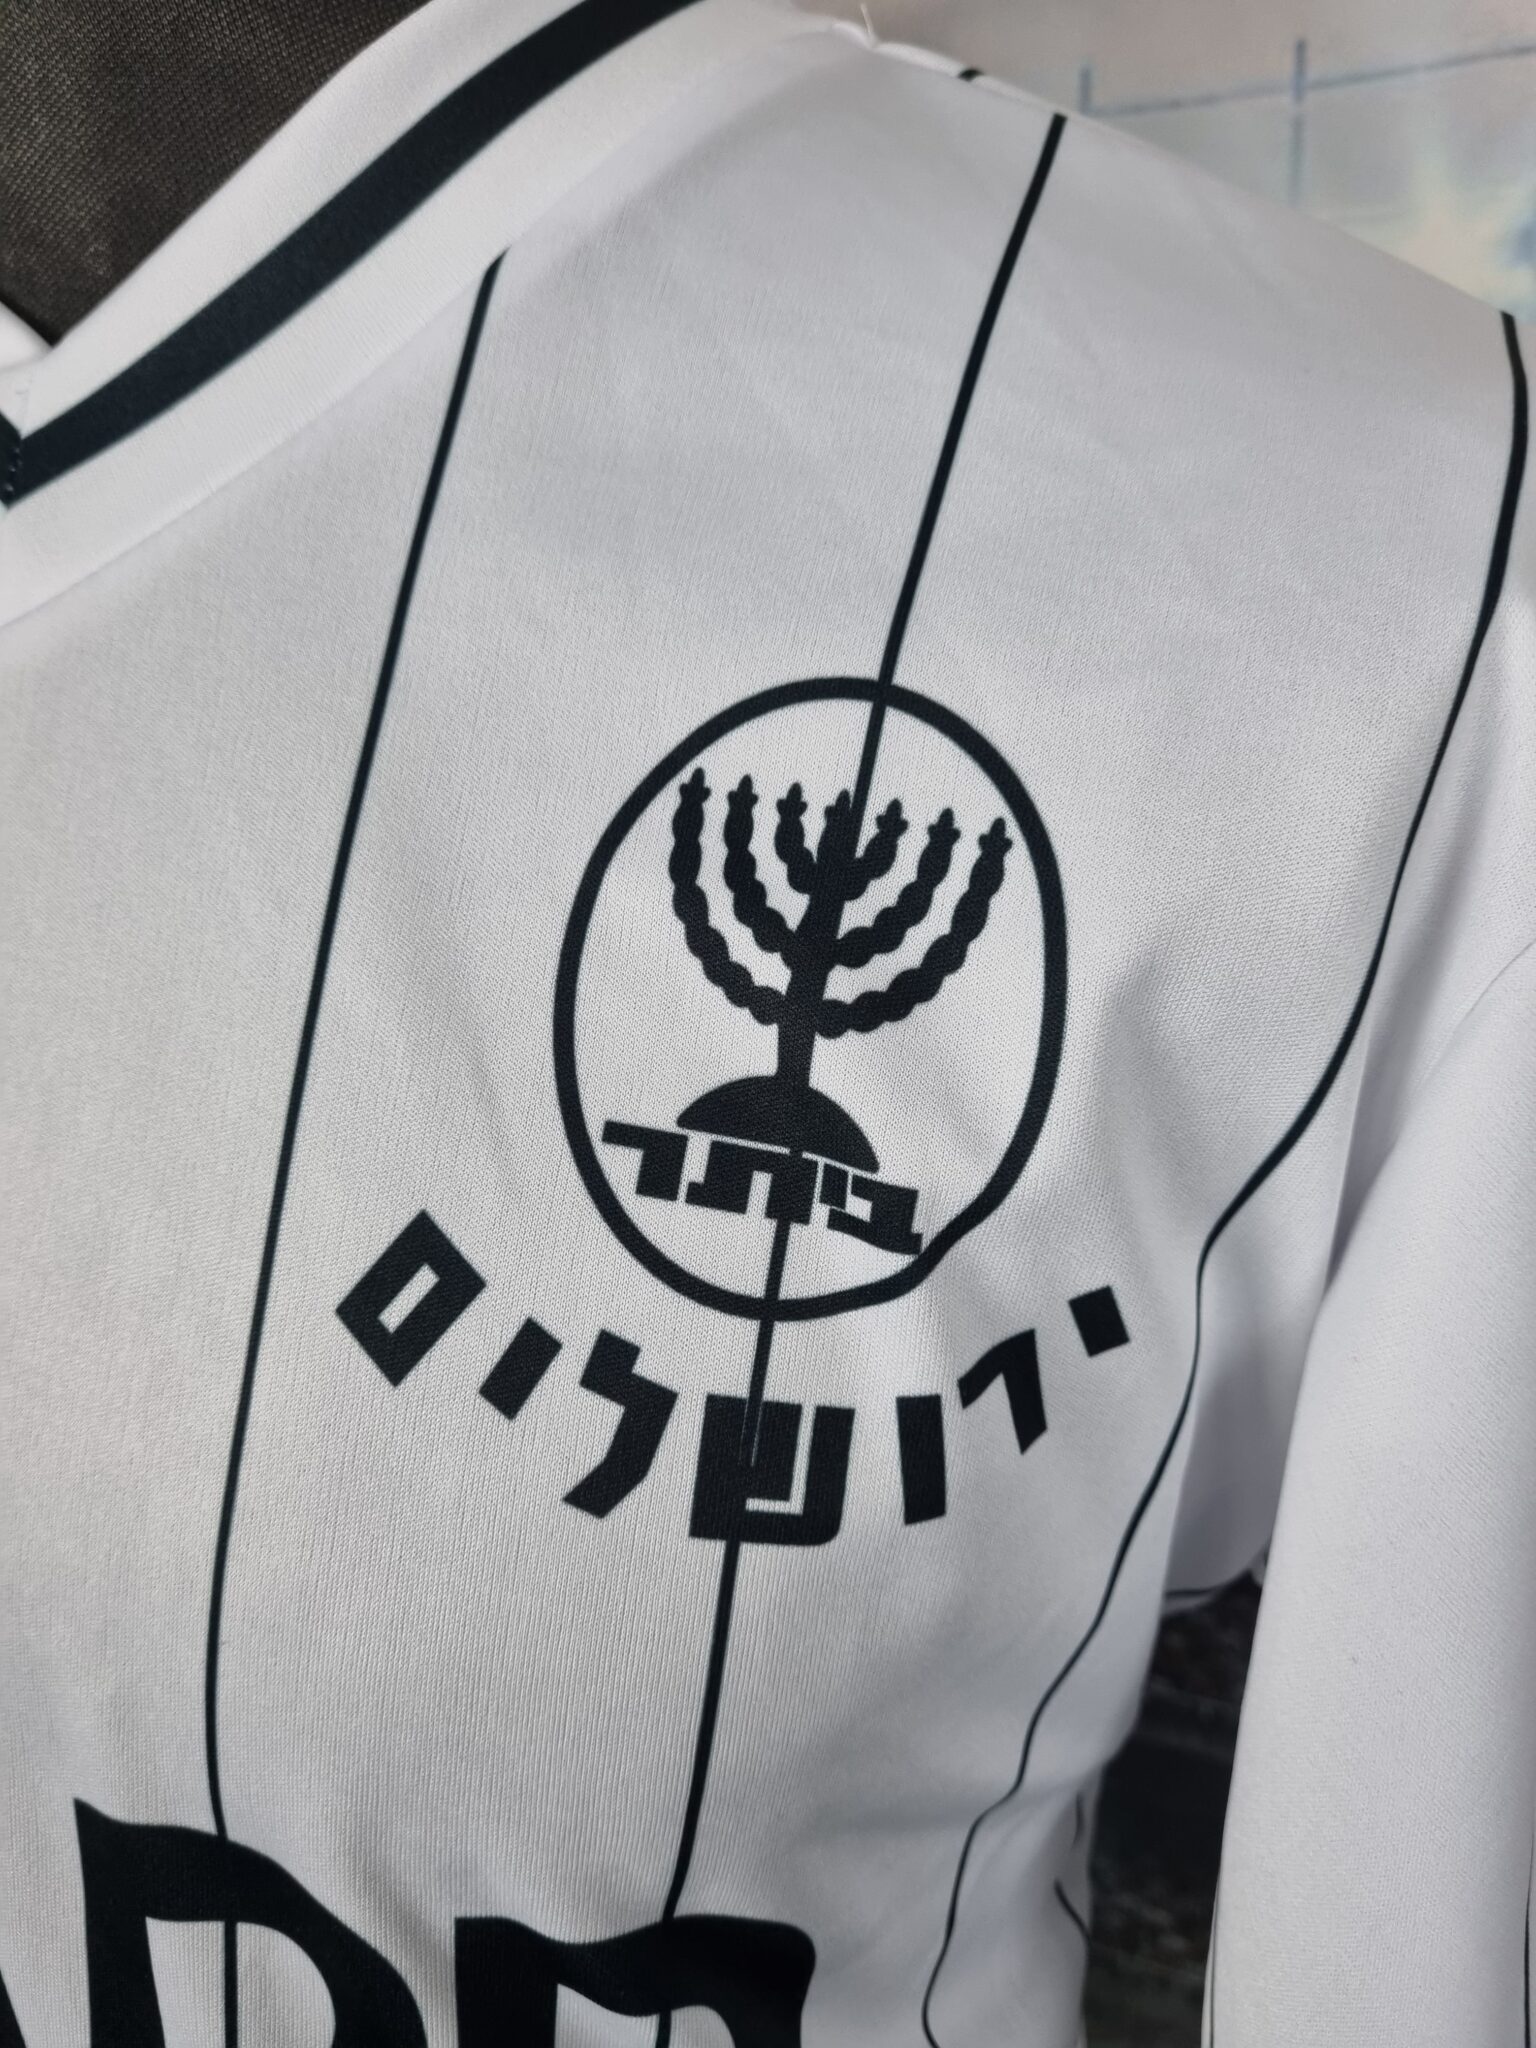 Beitar Jerusalem Football Shirt 1986/1987 Israel Retro Jersey Vintage Eli Ohana #11 ביתר ירושלים - Sport Club Memories